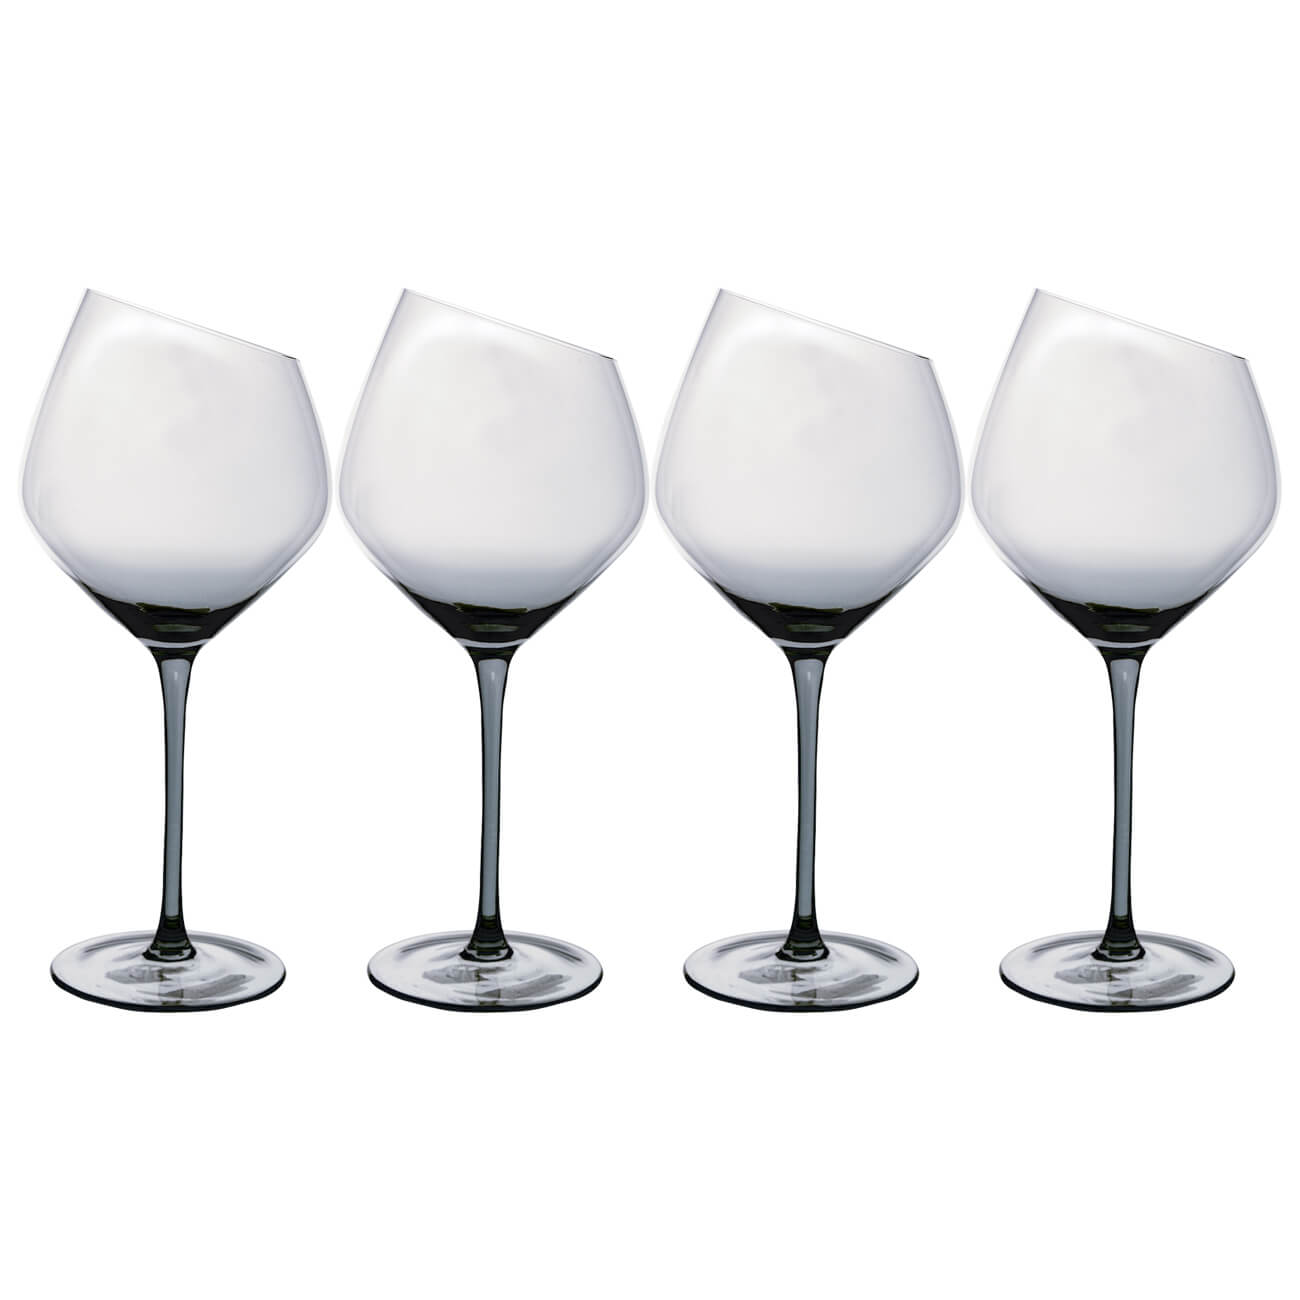 Бокал для красного вина, 560 мл, 4 шт, стекло, серый, Charm L Color бокал для белого вина 460 мл 2 шт стекло charm l